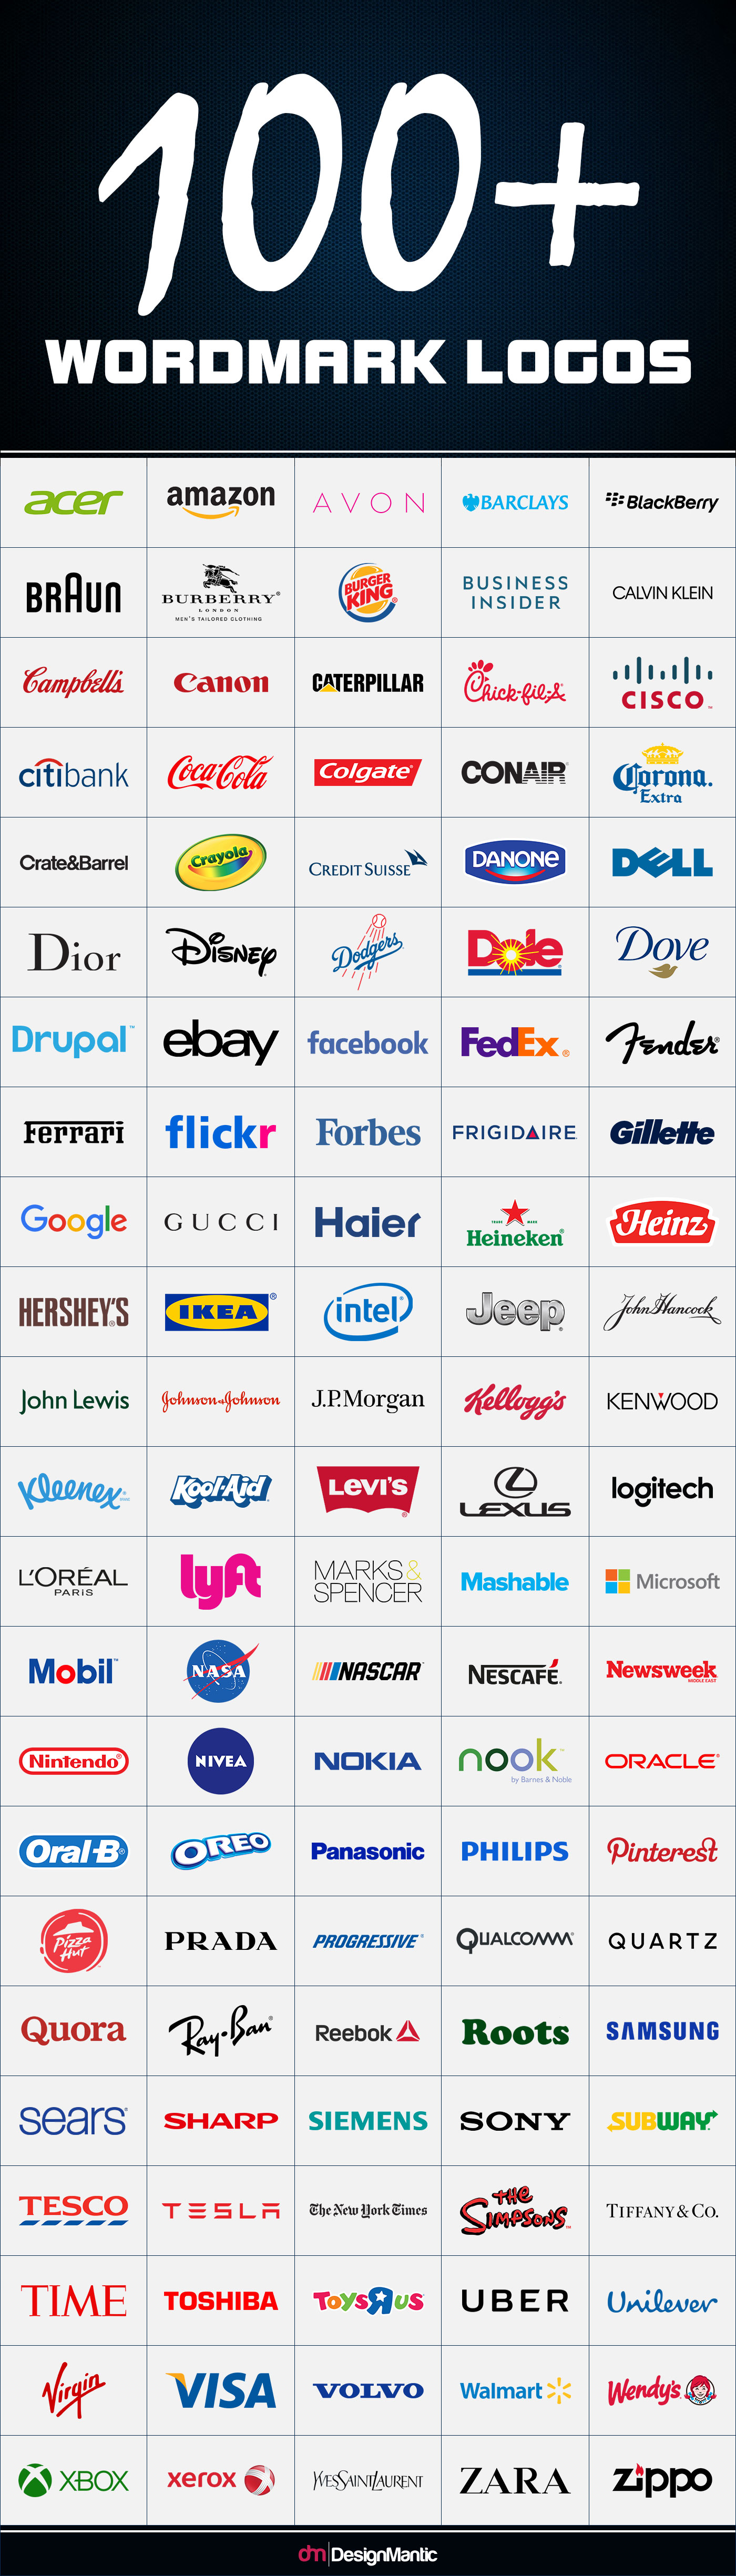 Over 100 wordmark logos